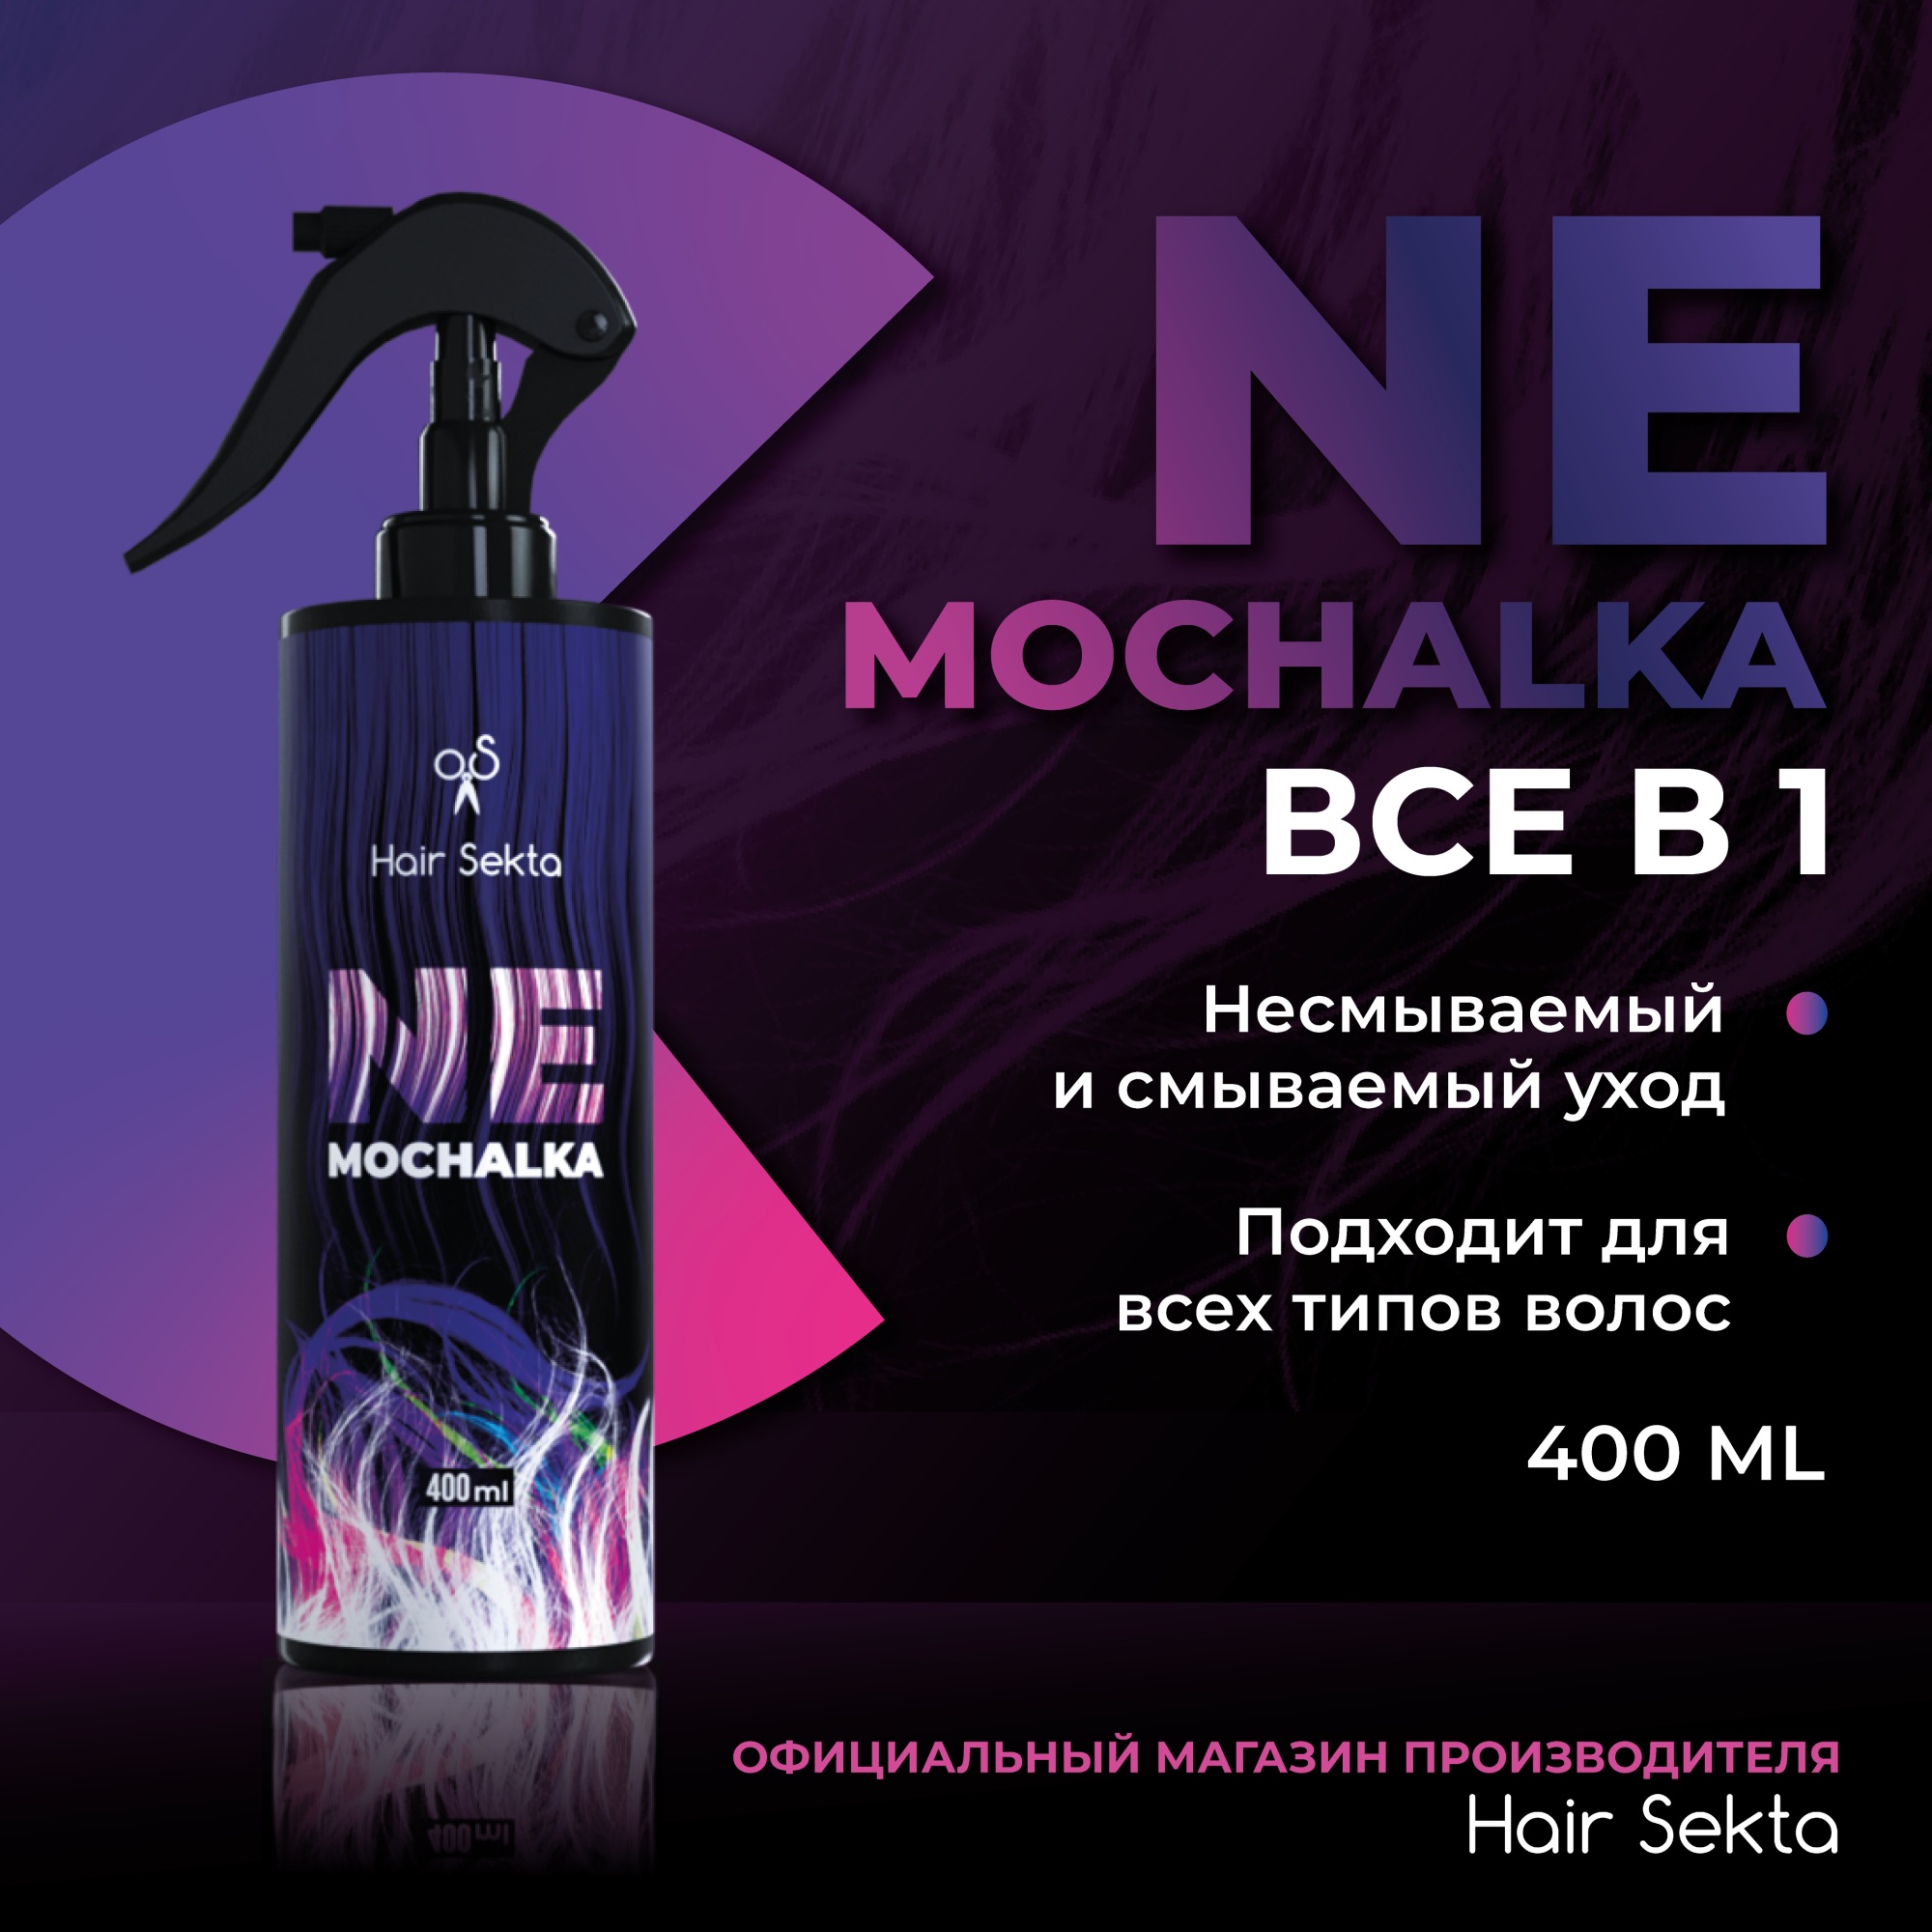 Многофункциональный уход для всех типов волос Hair Sekta NEMOCHALKA 400 мл ничего себе россия